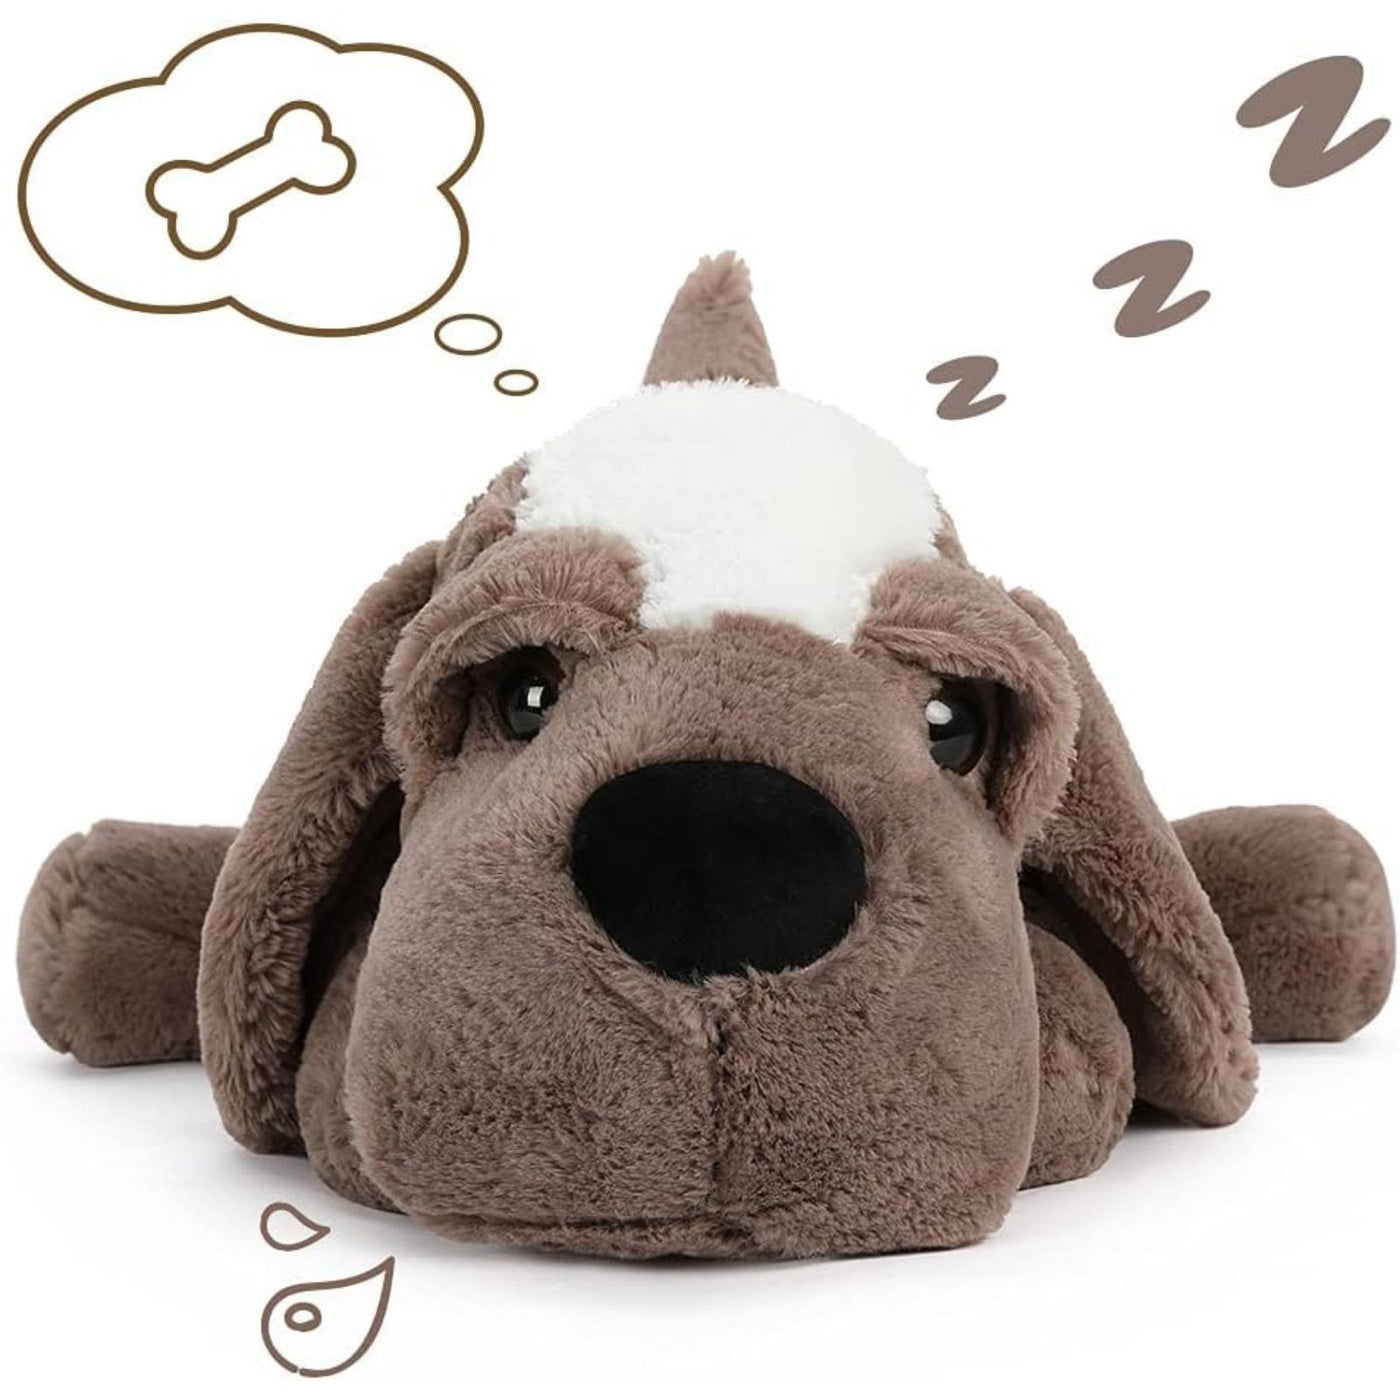 Cute Dog Stuffed Animal Toy, Grey, 24 Inches